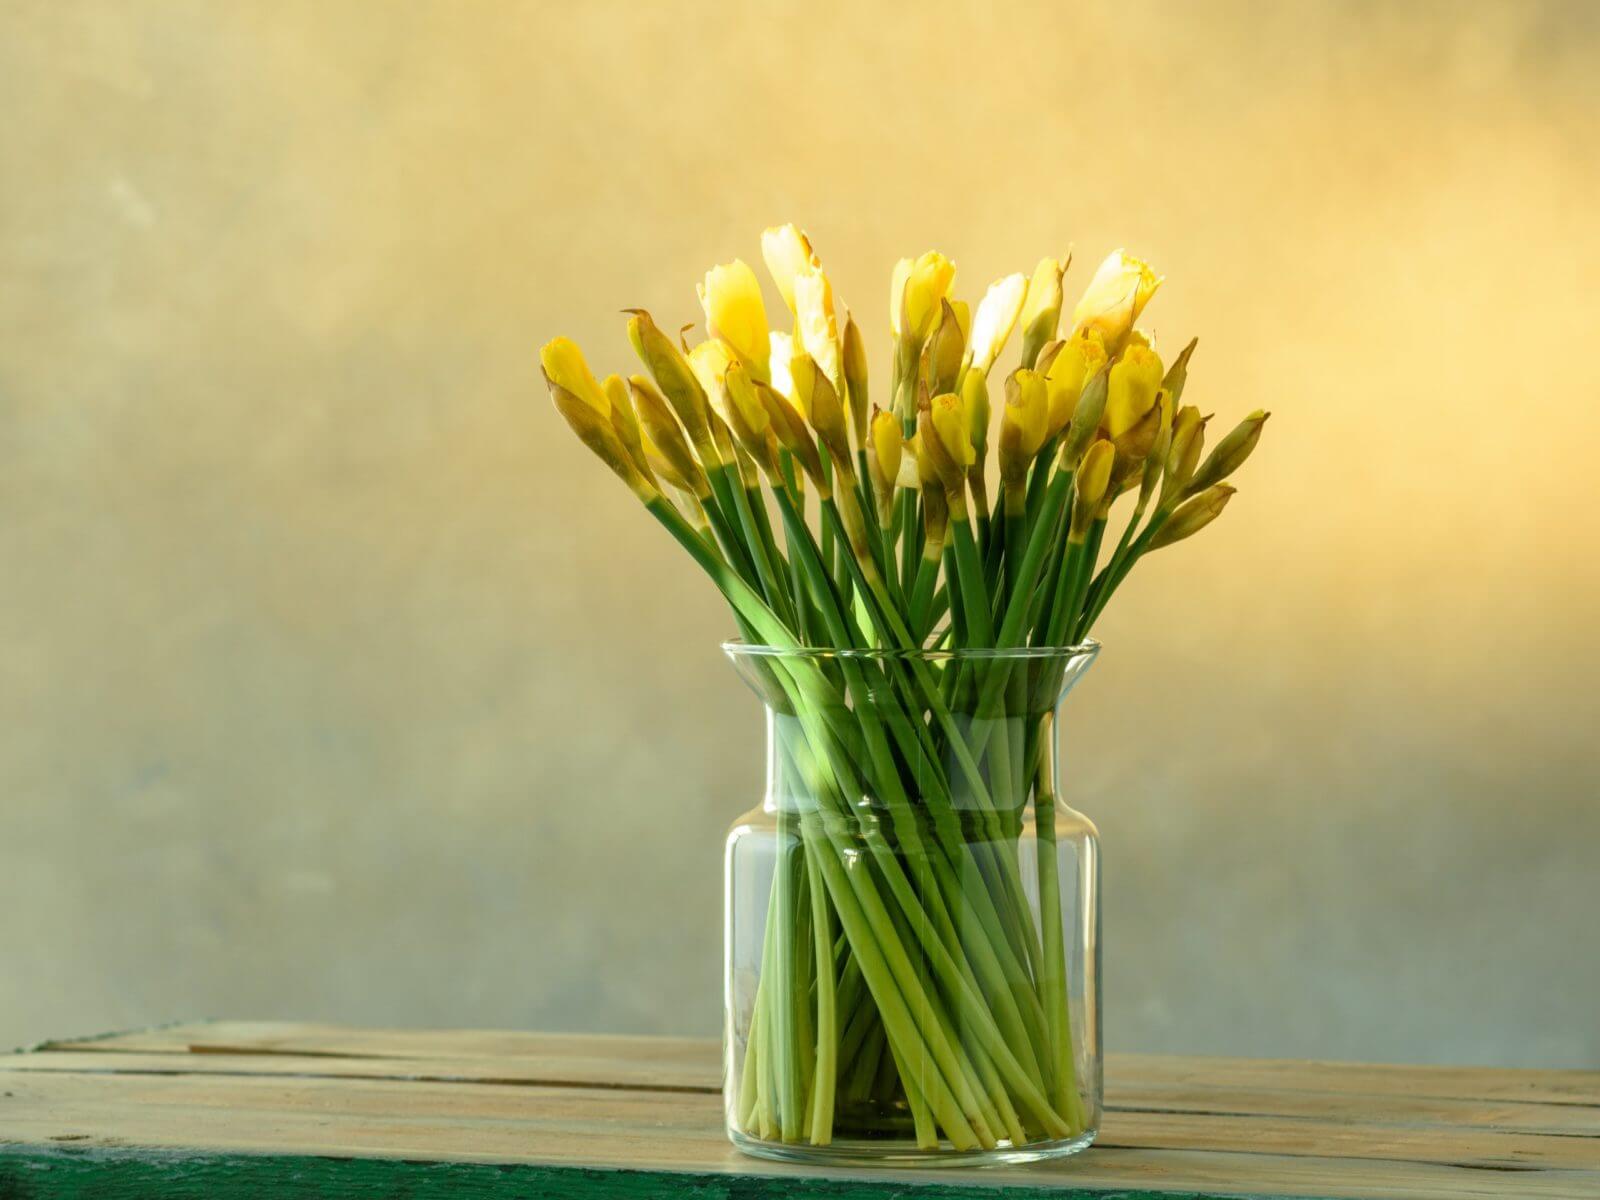 Zółte tulipany w wazonie w kształcie słoja